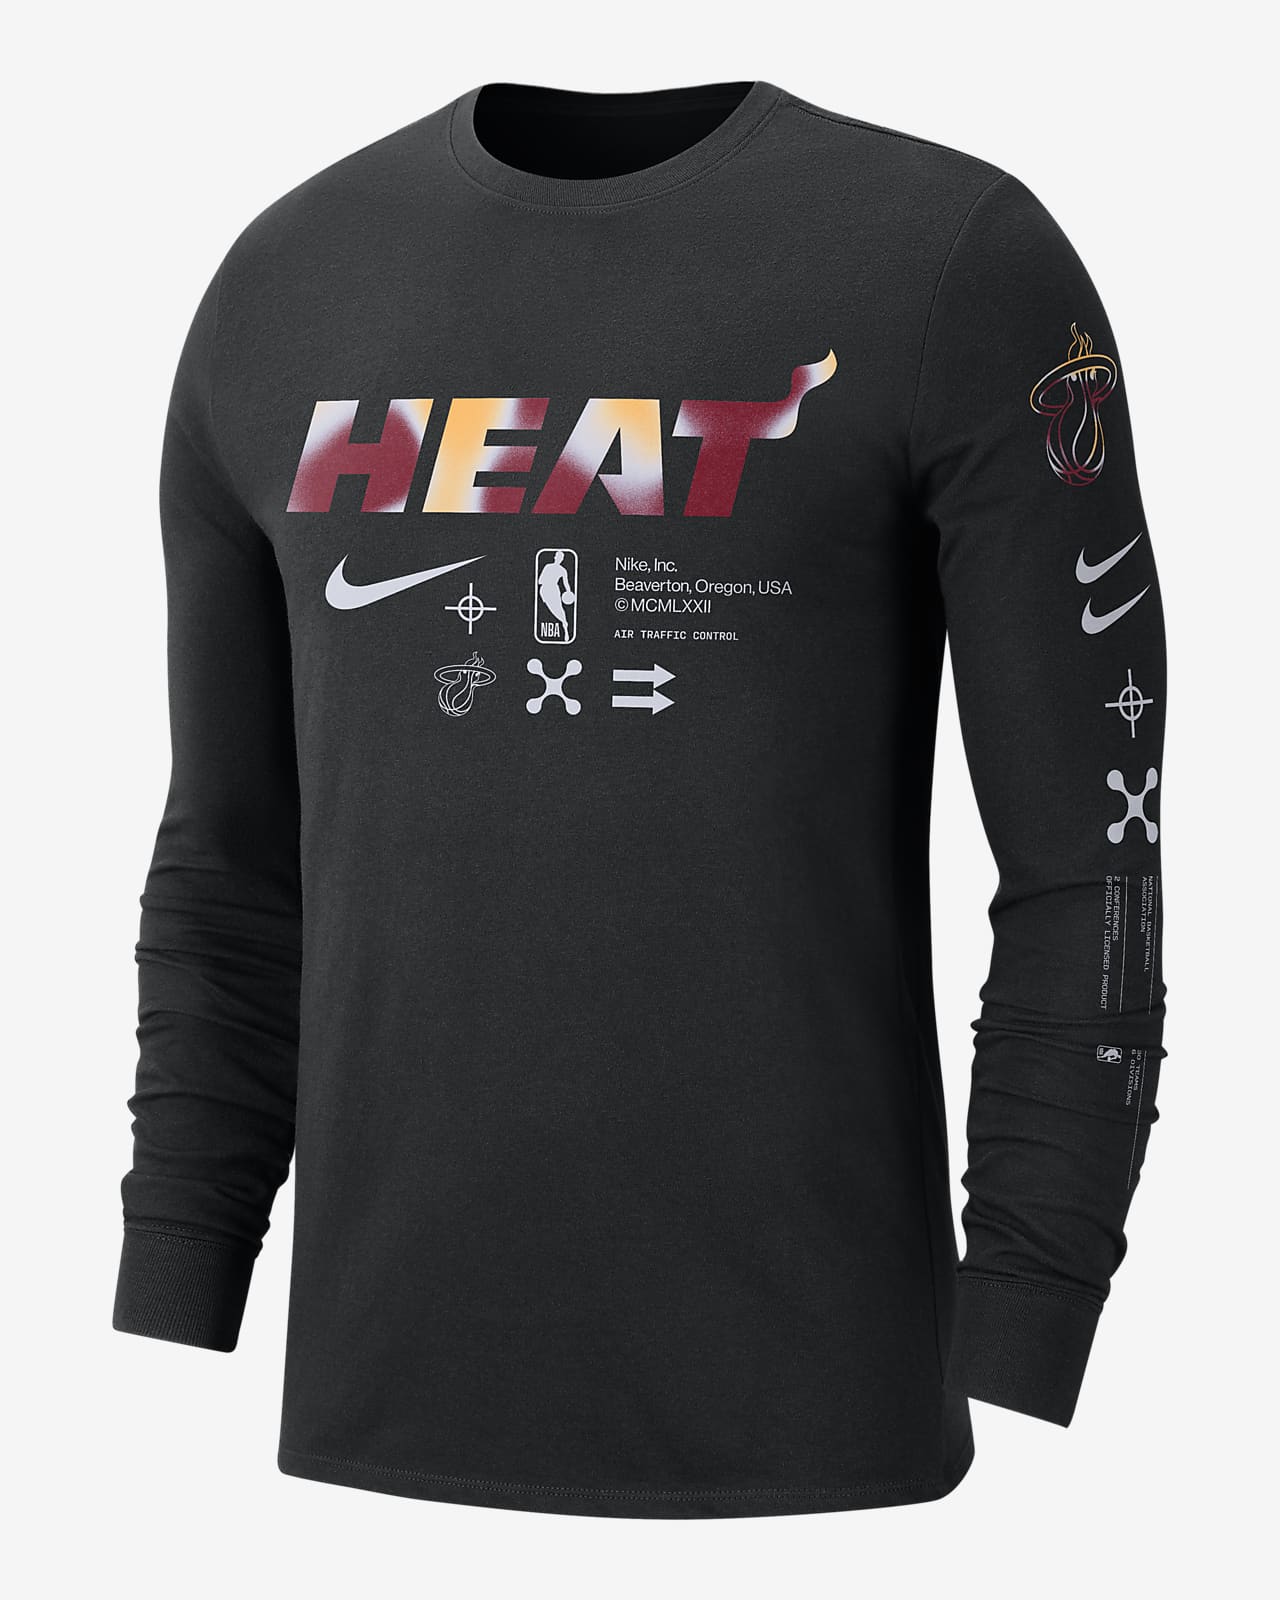 Miami Heat Men's Nike NBA Long-Sleeve T-Shirt